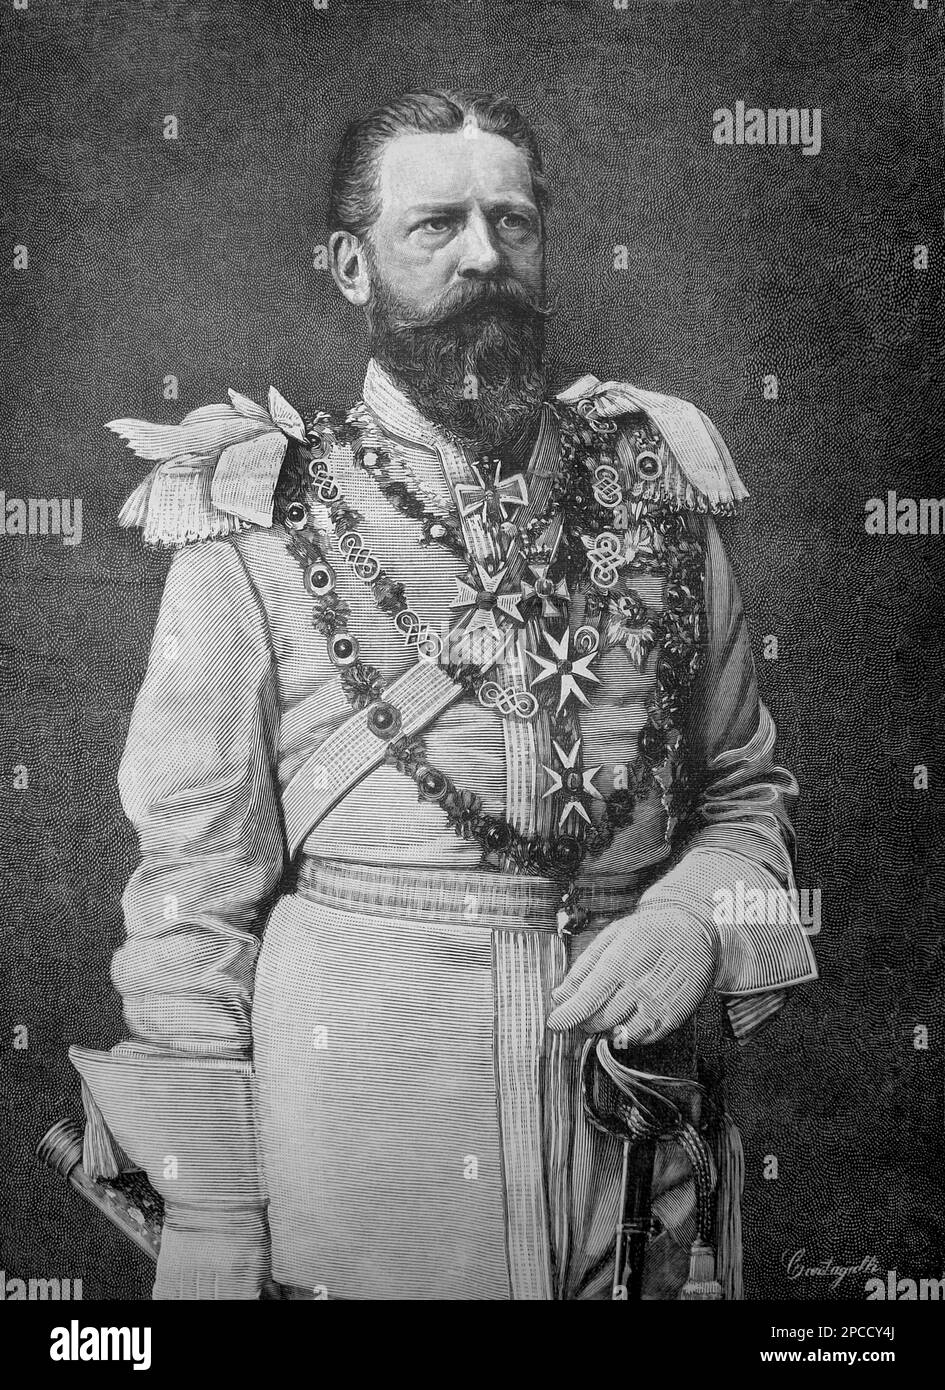 1888, GERMANIA: Il Kaiser FEDERICO III (1831 - 1888) HOHENZOLLERN, padre del Kaiser Guglielmo II (Guglielmo II), re di Prussen, imperatore di Germania (1859 - 1941), nipote della regina Vittoria d'Inghilterra. Incisione da ILLUSTRAZIONE ITALIANA 1888. Federico Guglielmo (come era noto prima di assumere il trono) nacque a Potsdam, figlio del Principe Guglielmo di Prussia e della Principessa Augusta di Saxe-Weimar. Suo padre era fratello minore del re Federico Guglielmo IV di Prussia . Nel 1858 Federico Guglielmo sposò la principessa Victoria (' Vicky') di Gran Bretagna e Irlanda, la più grande Foto Stock